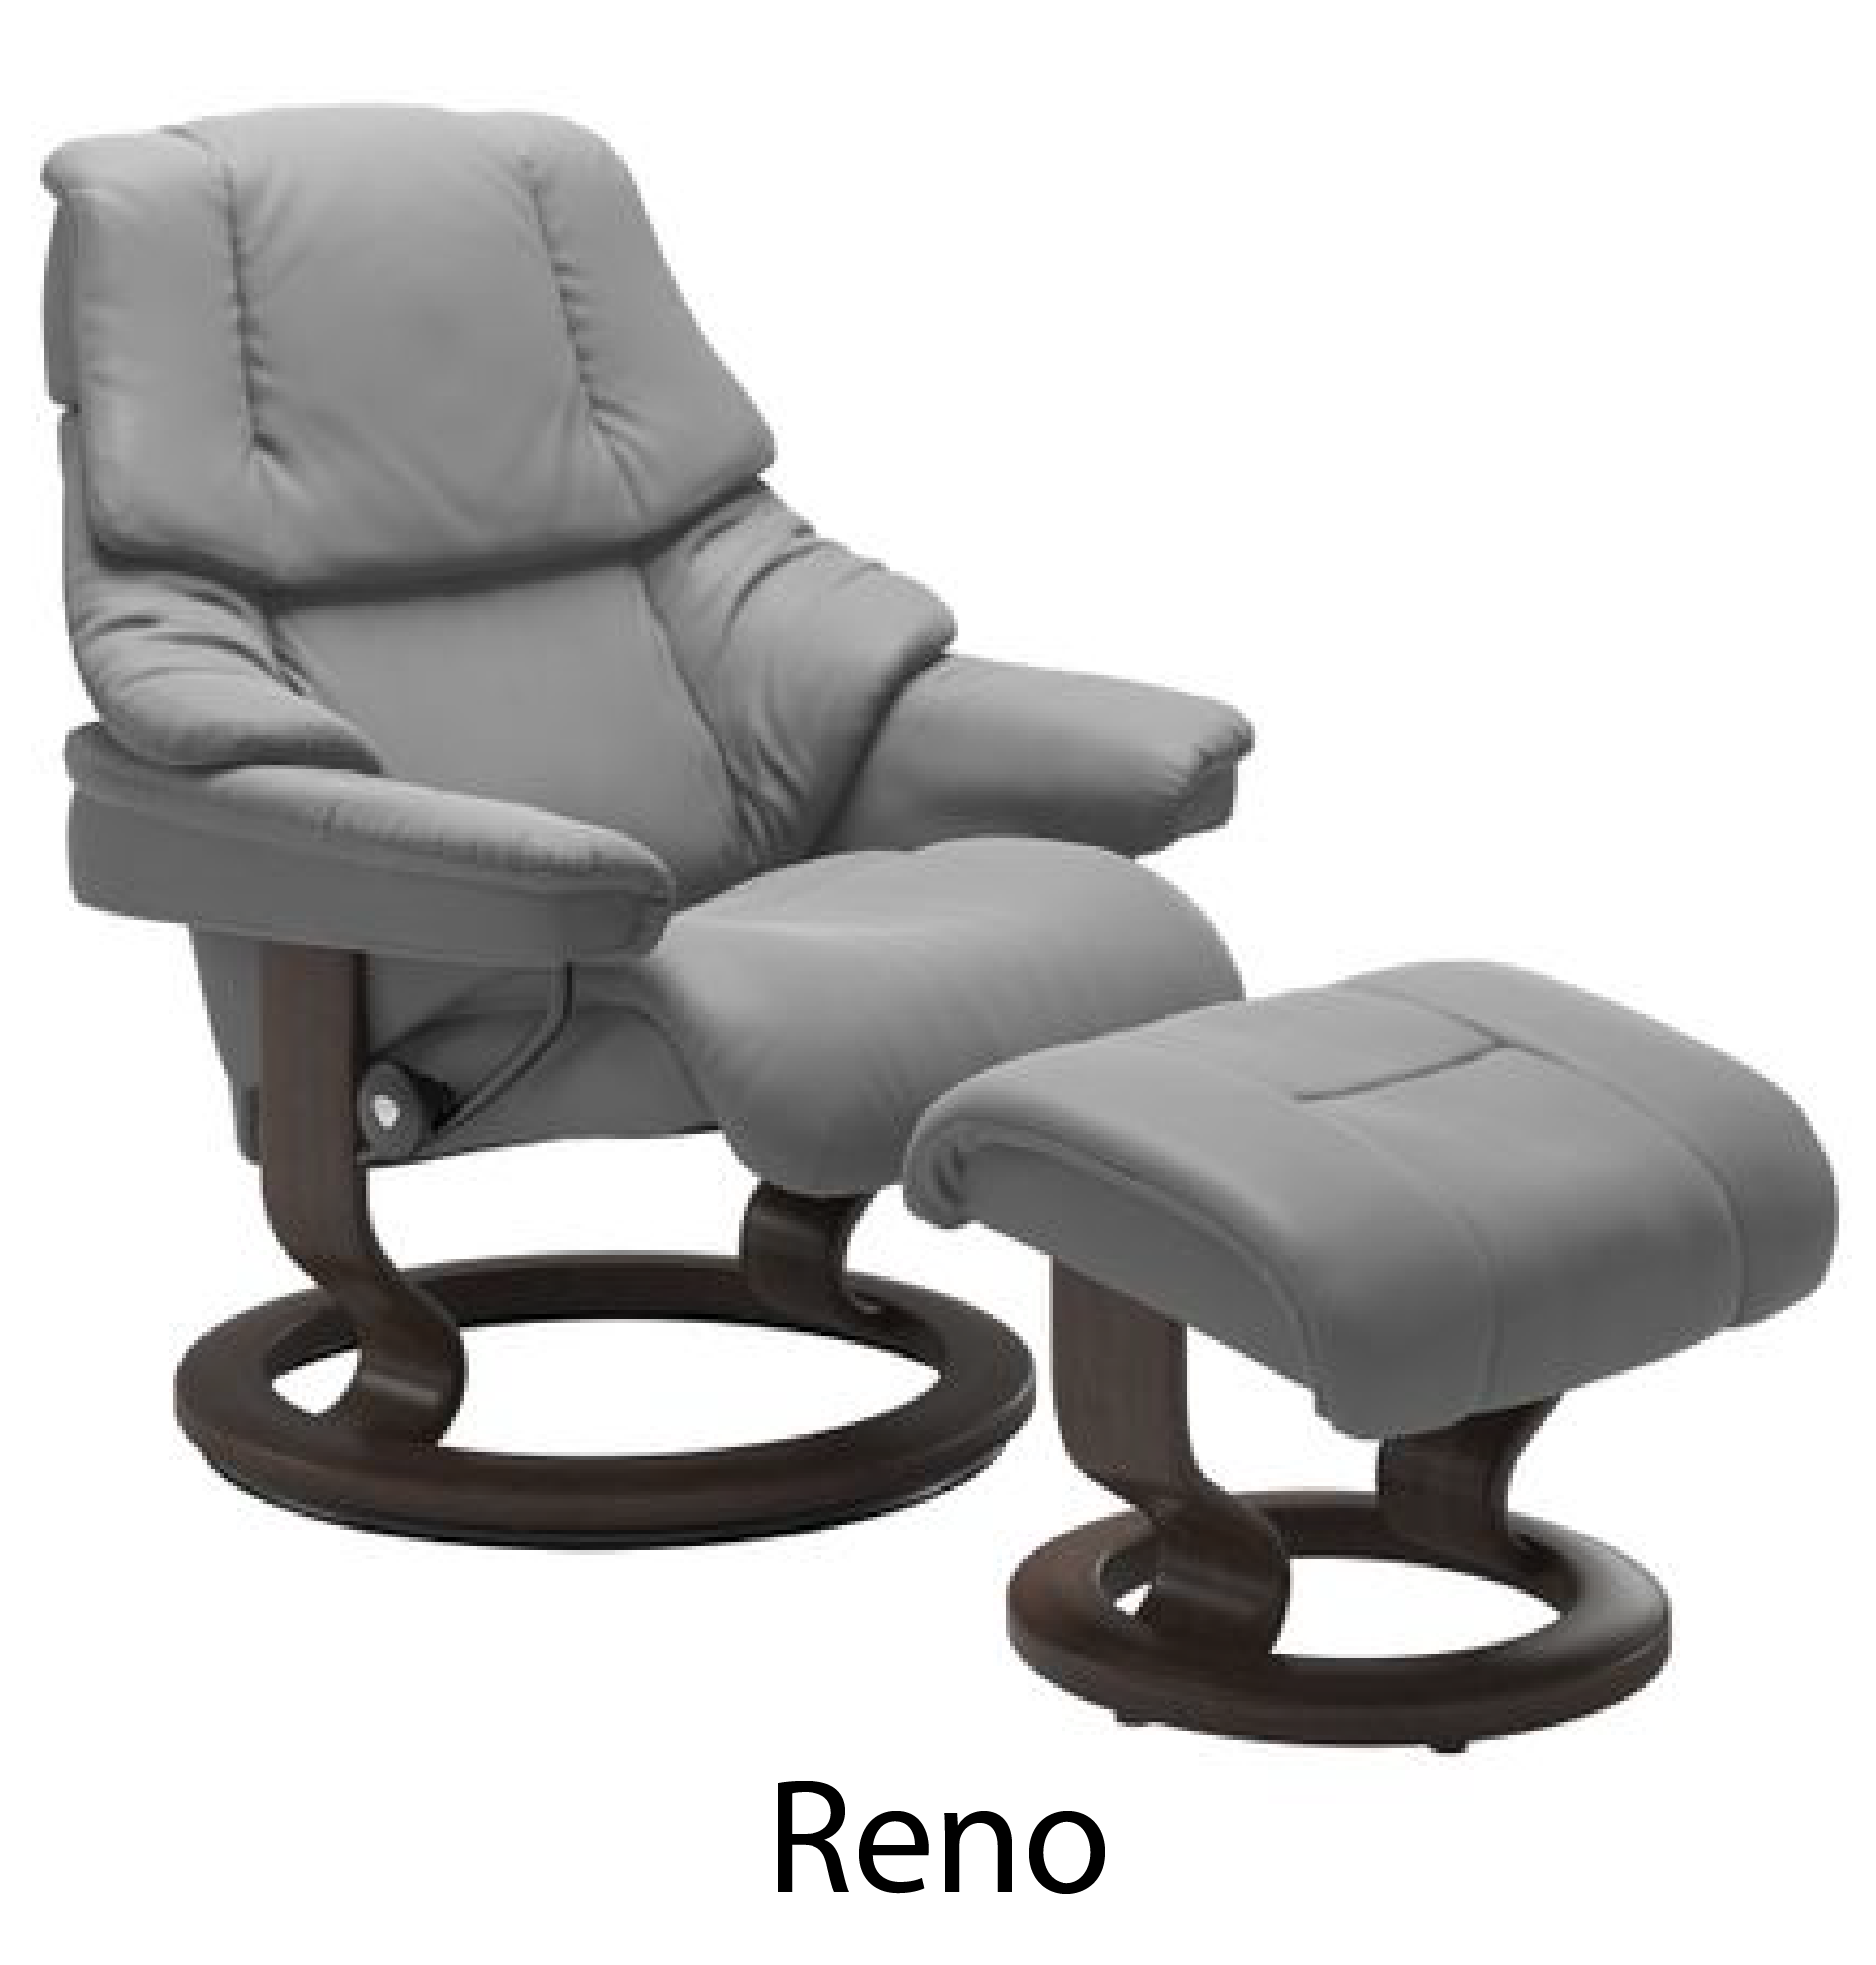 Reno Recliner